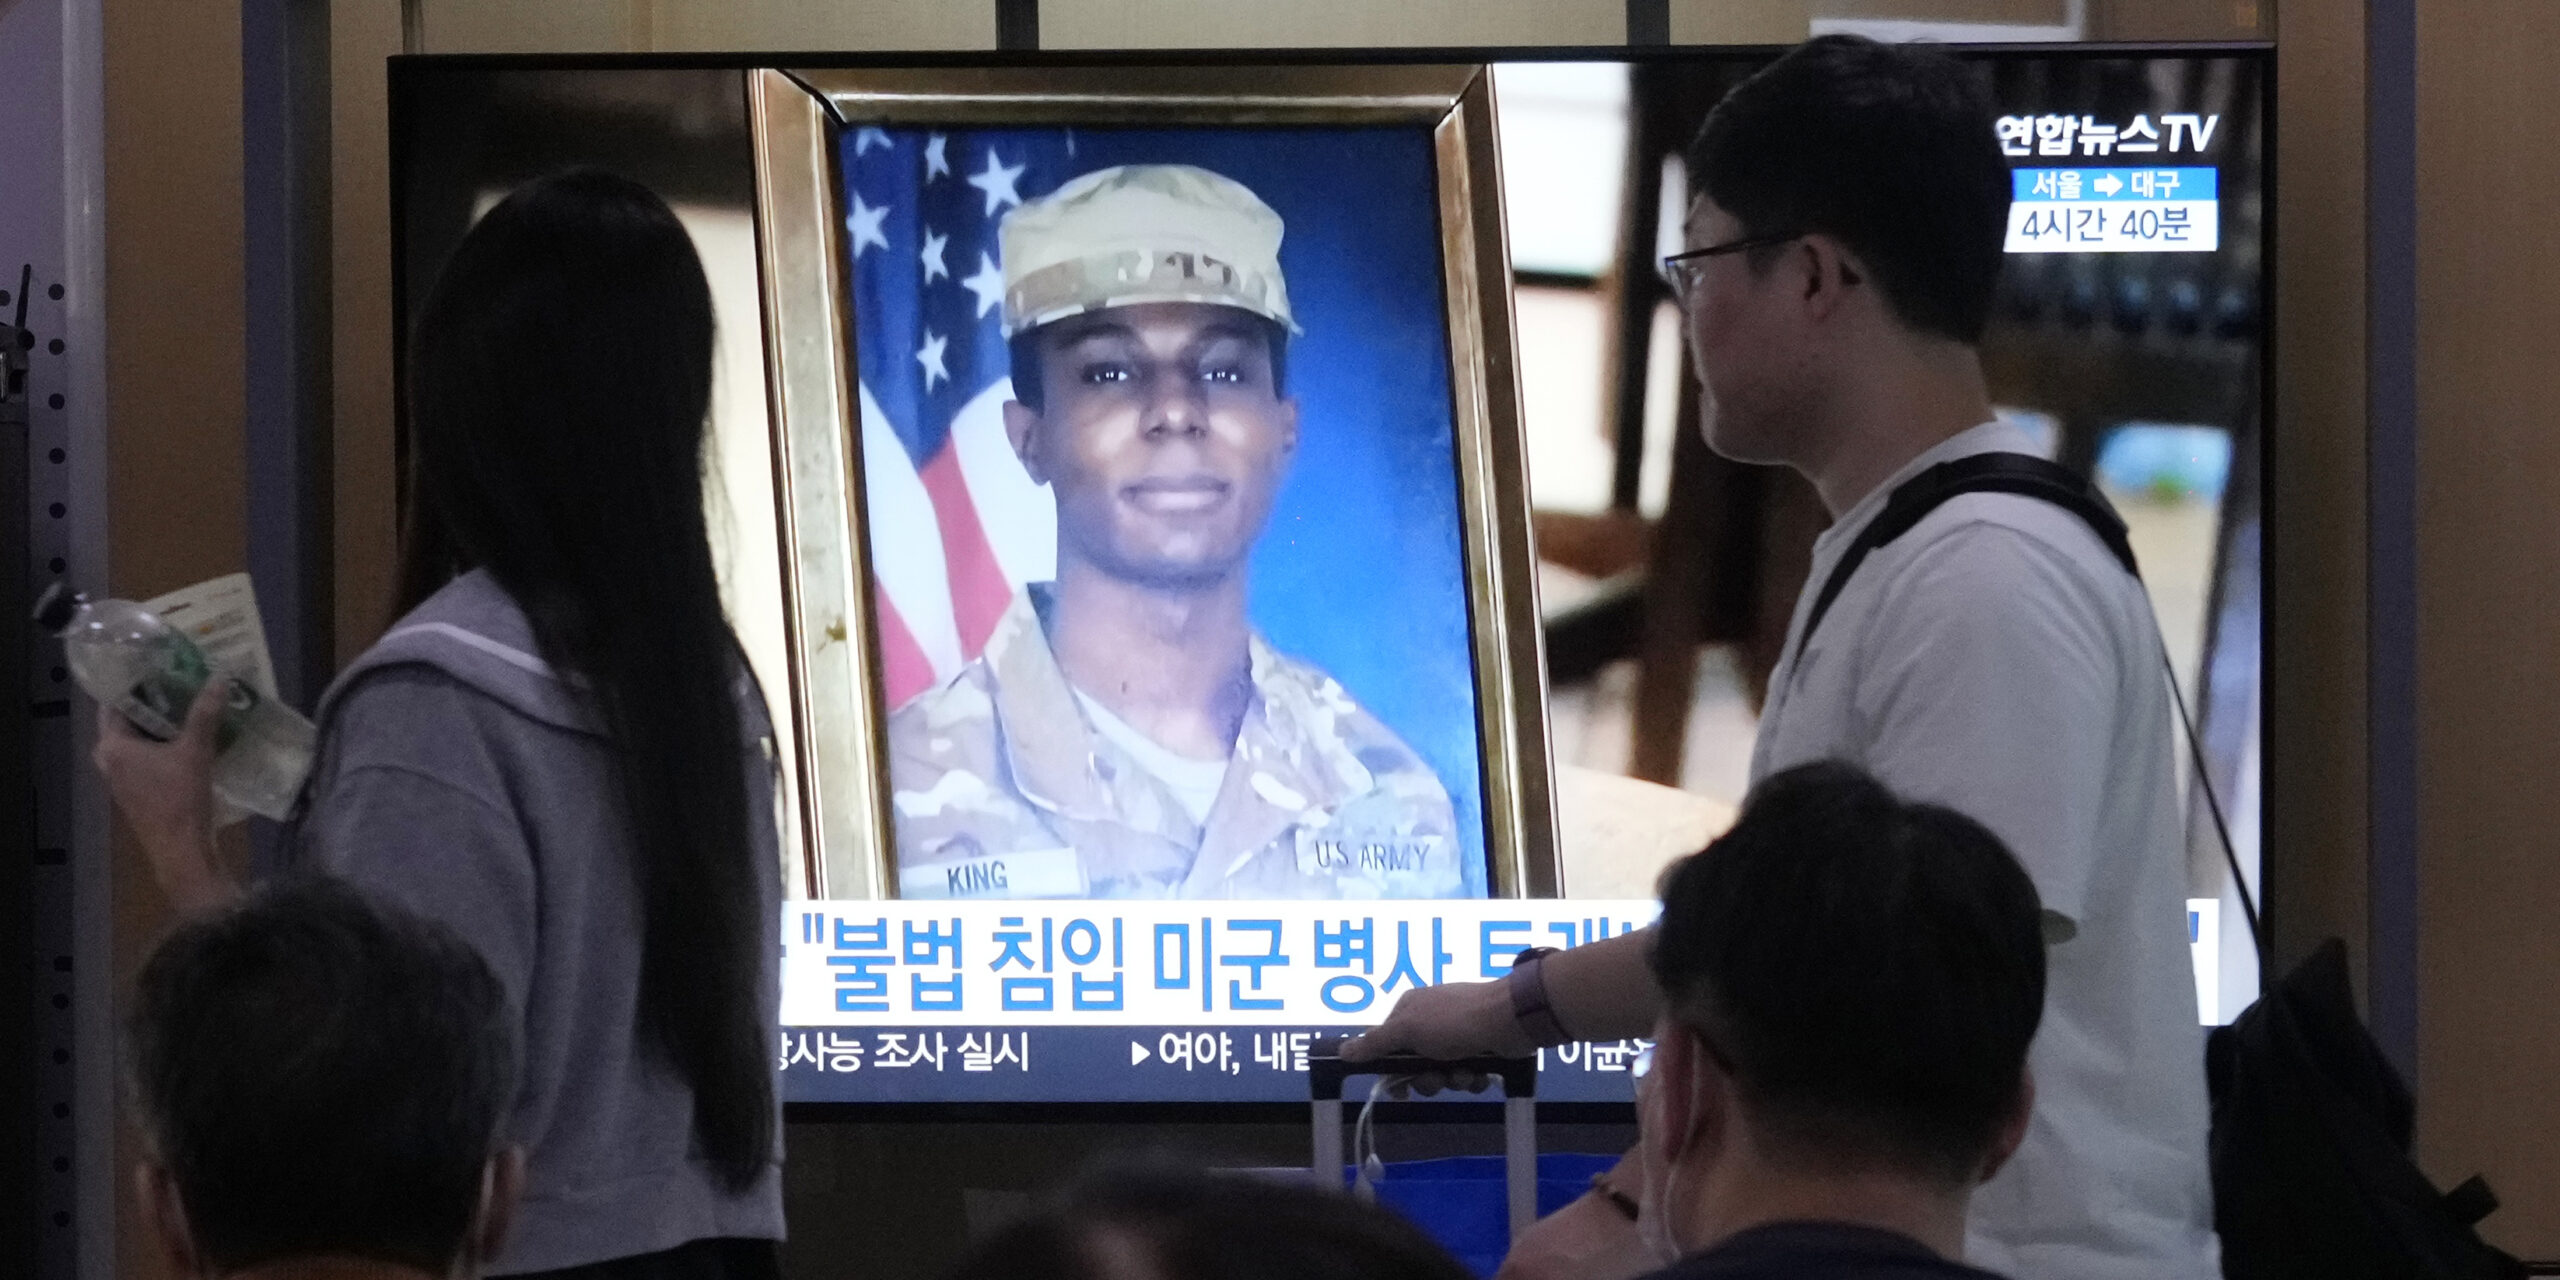 Ein Fernsehbildschirm zeigt ein Bild des US-amerikanischen Soldaten Travis King während einer Nachrichtensendung im Bahnhof von Seoul.